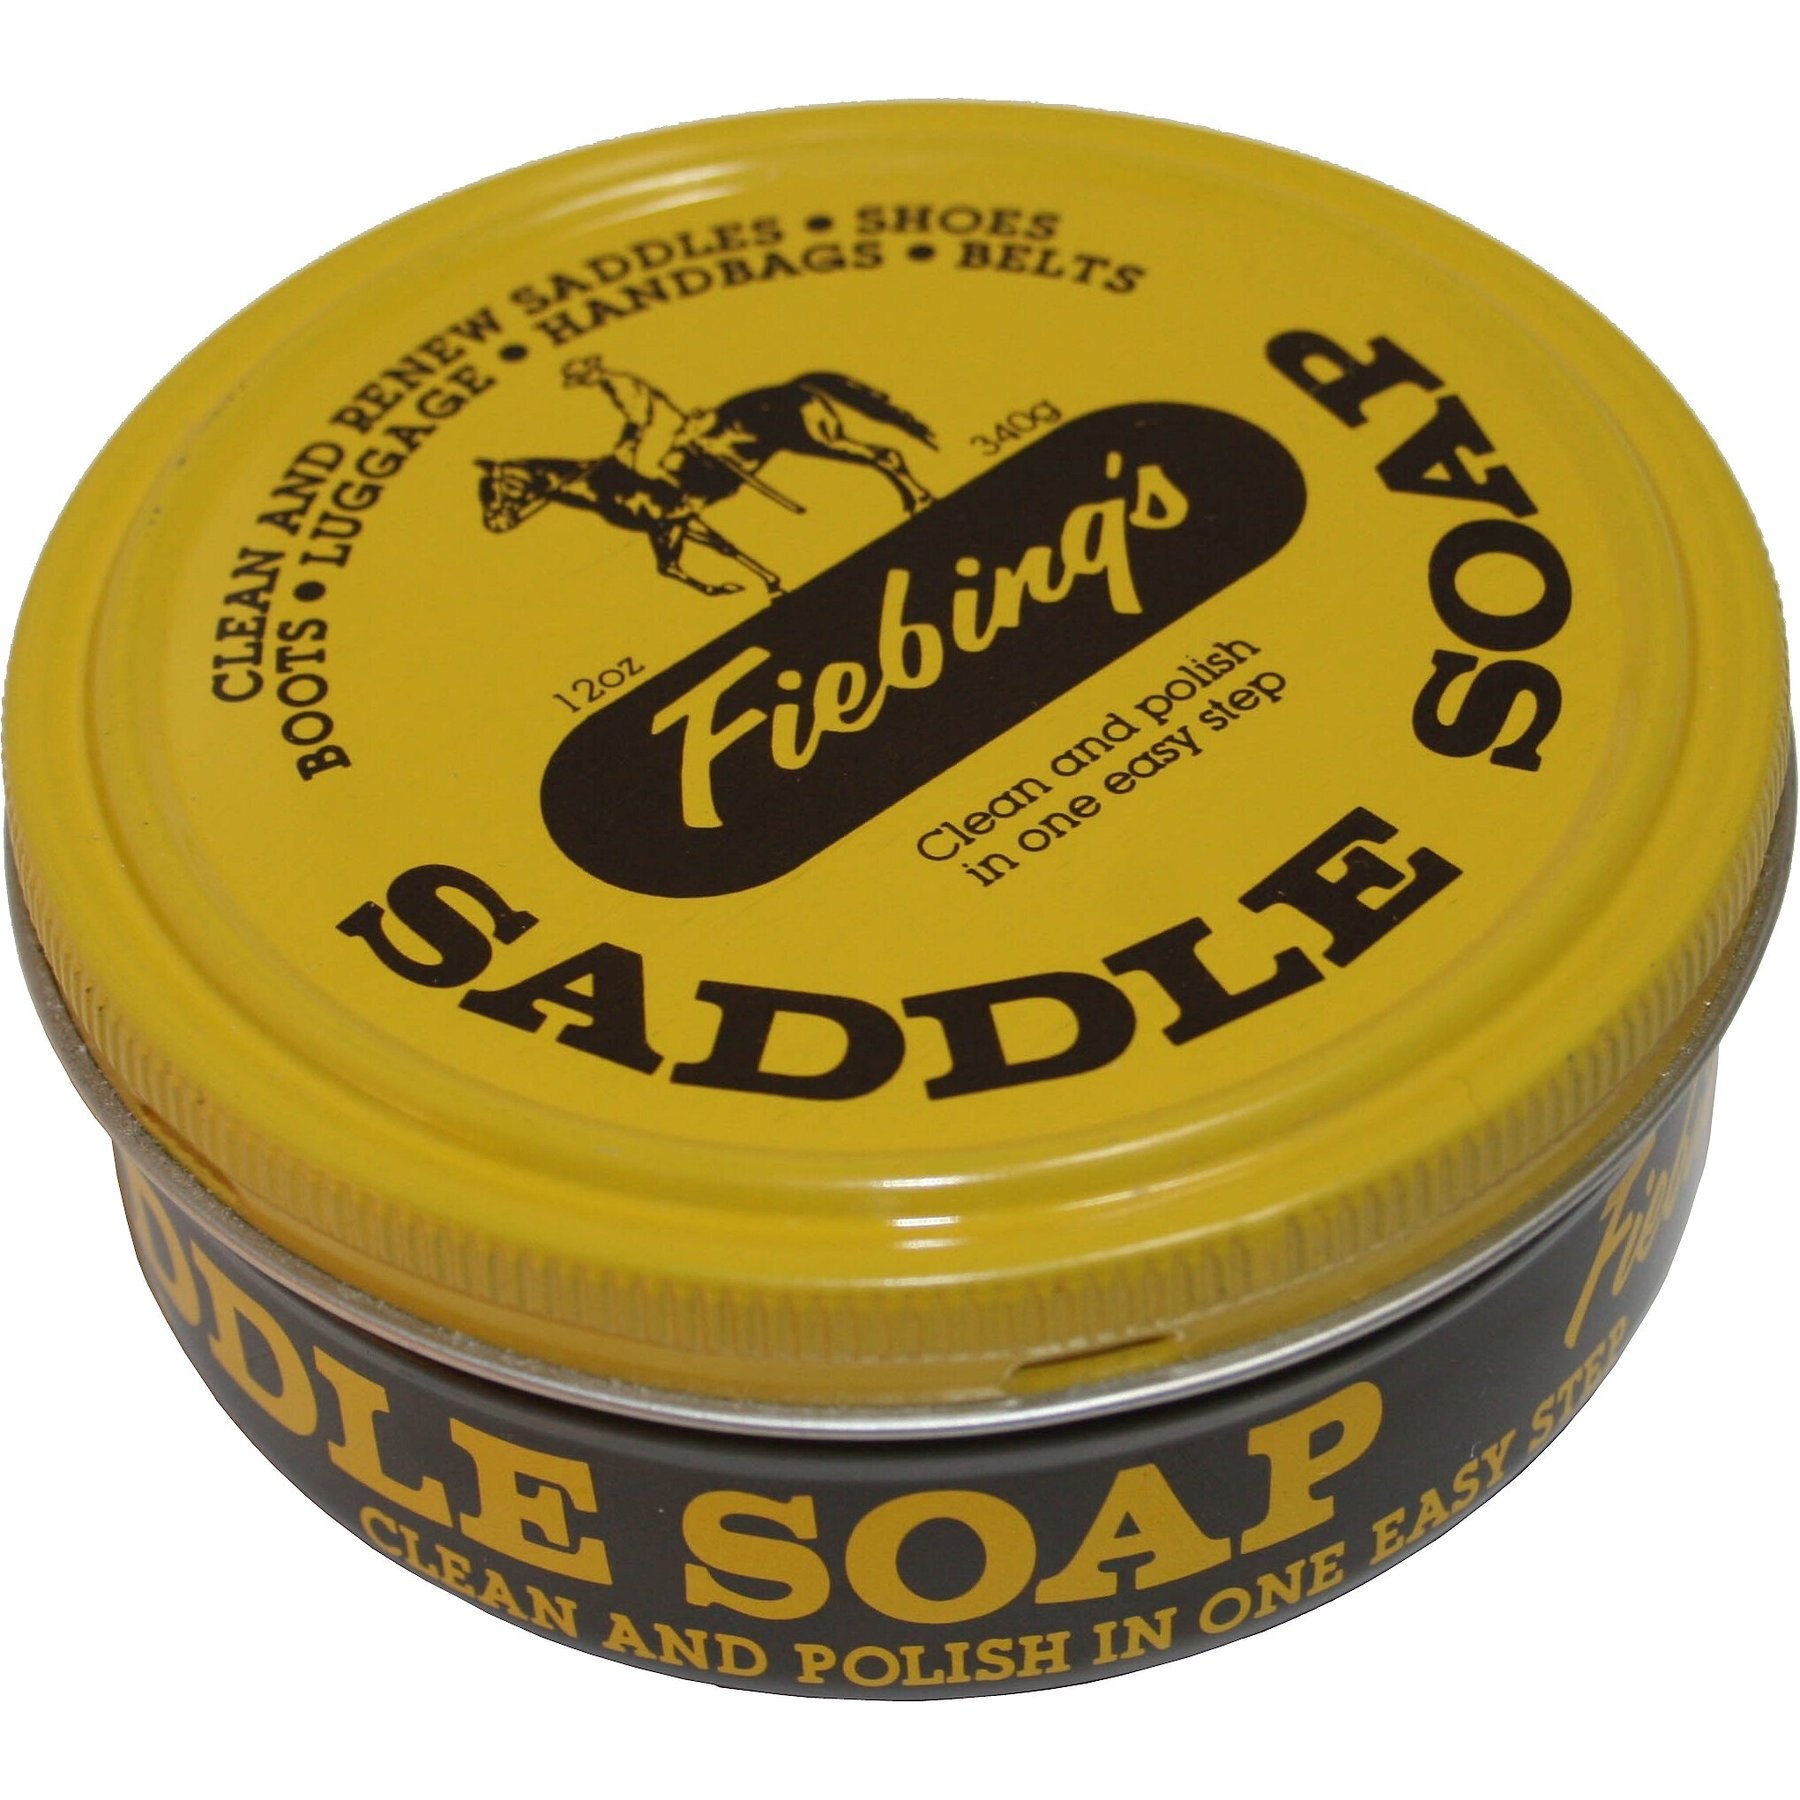 Kiwi Saddle Soap Paste